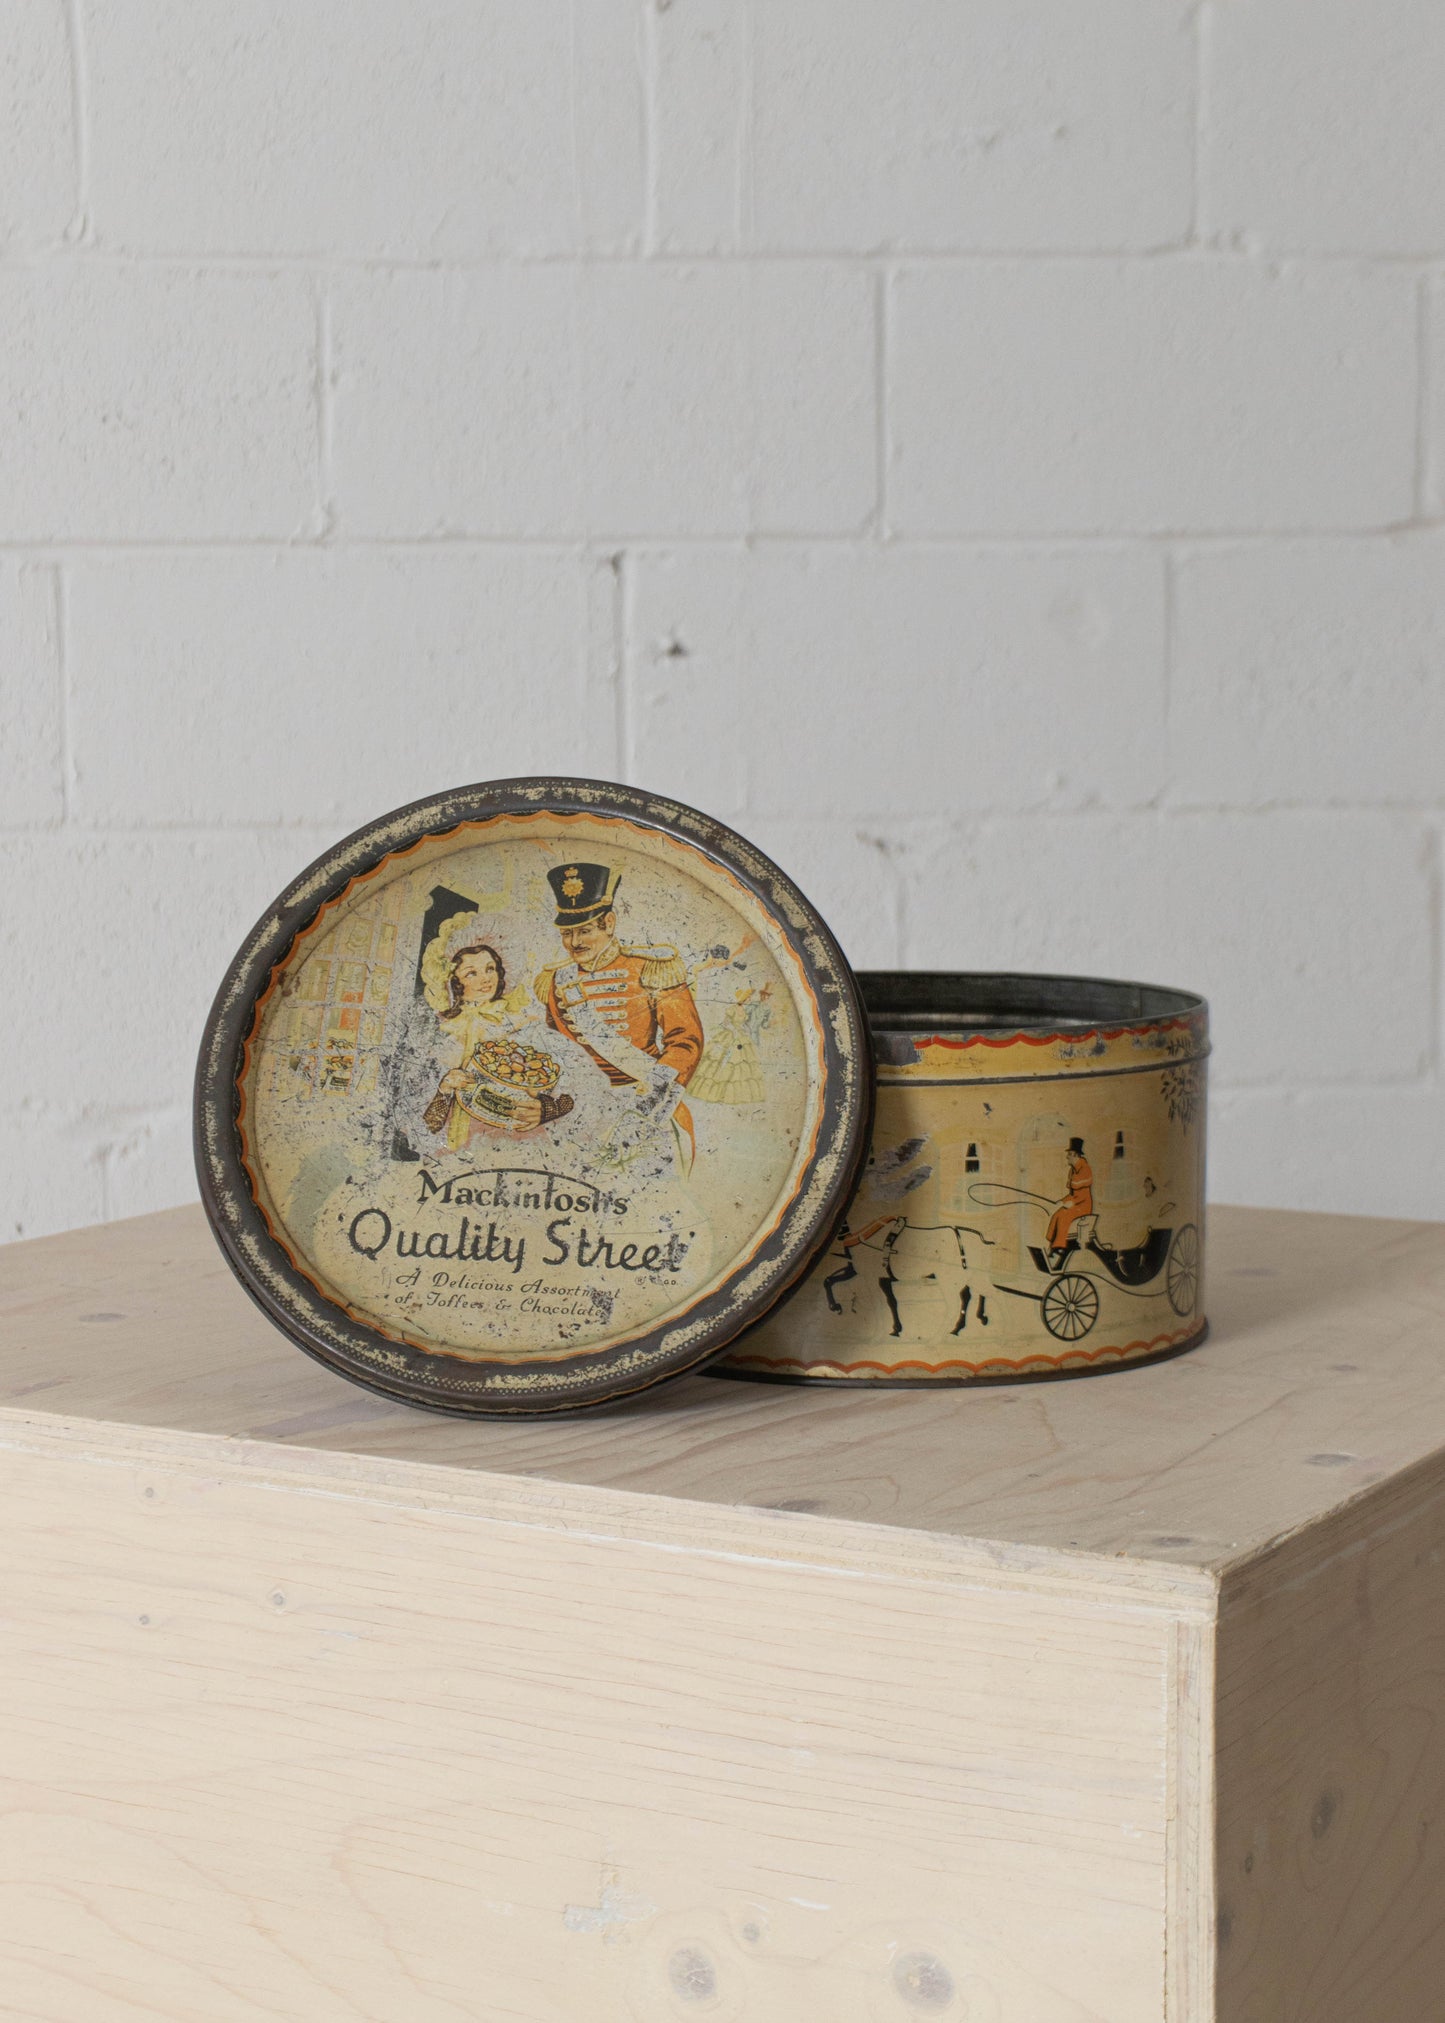 1950s Mackintosh's Quality Street Tin